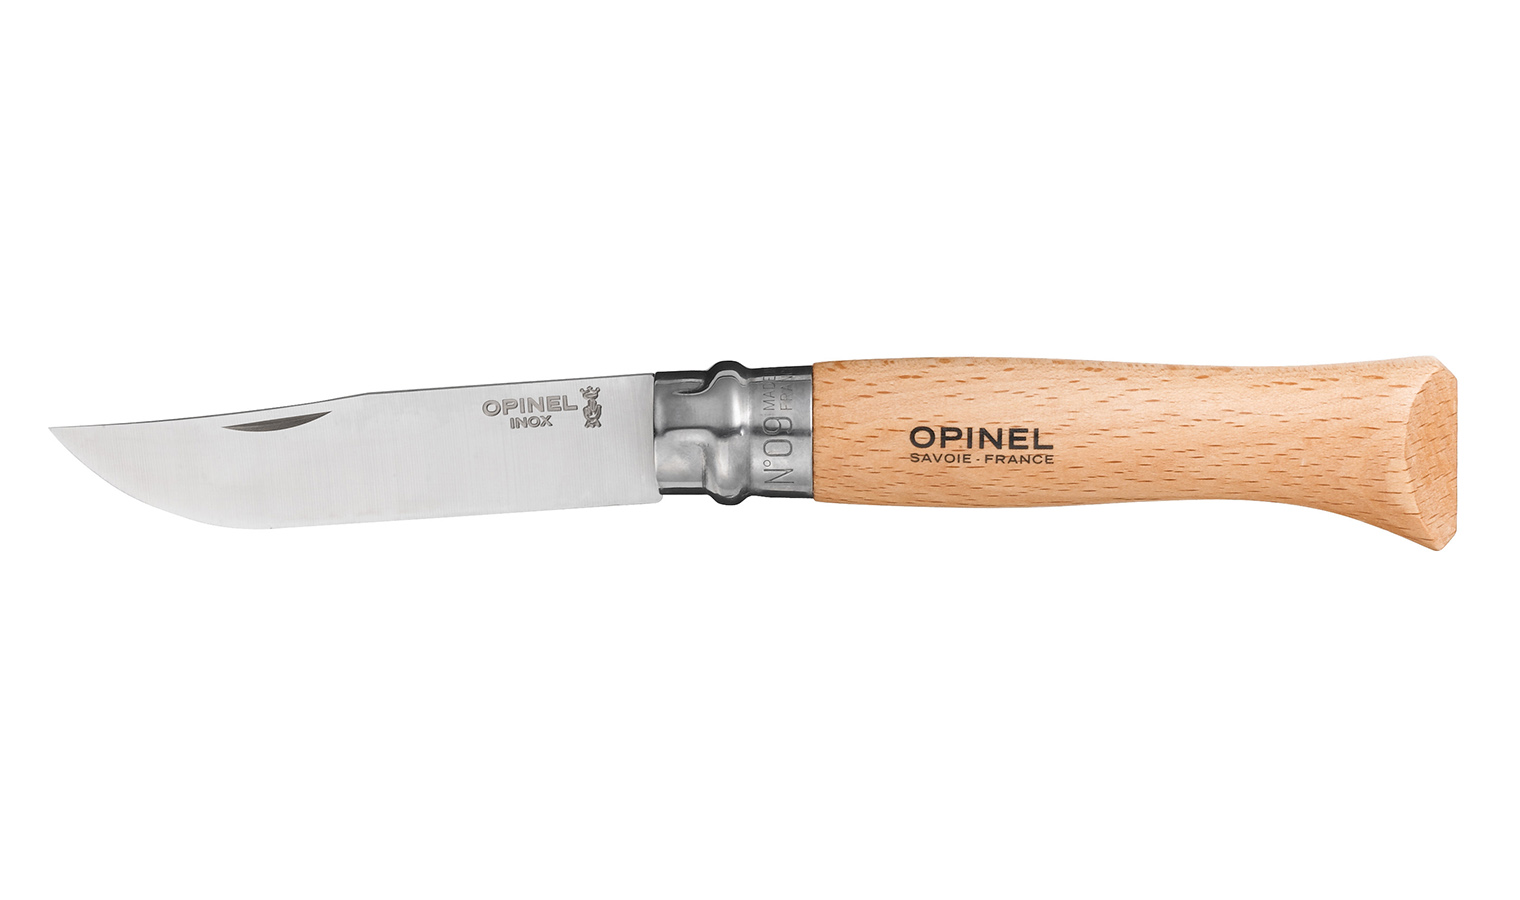 Opinel knife model virobloc n.9 stainless steel blade mm.90